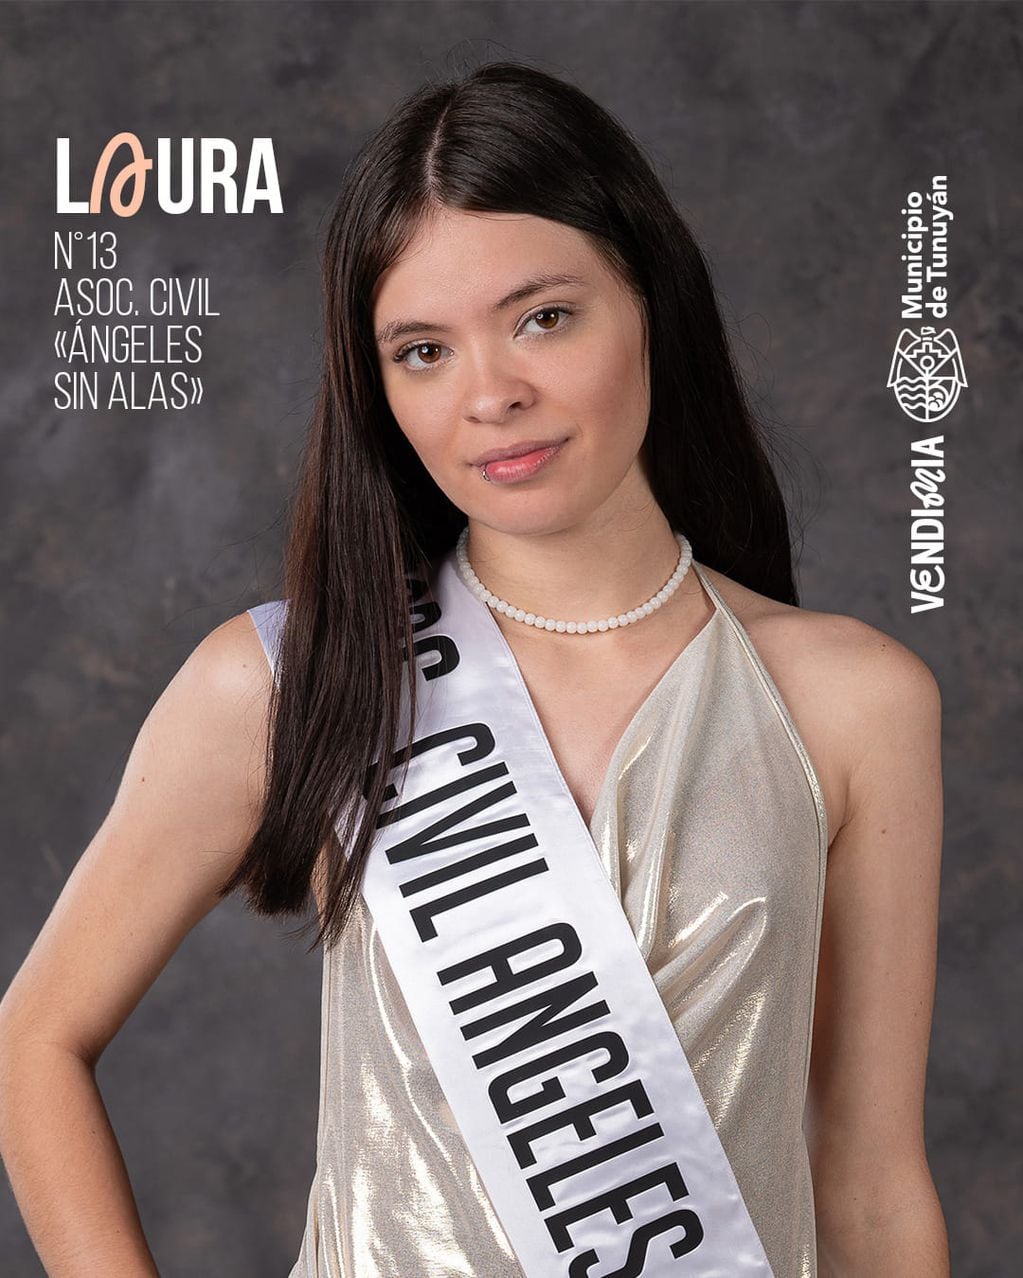 Laura pertenece a la Asociación Civil "Ángeles sin alas"